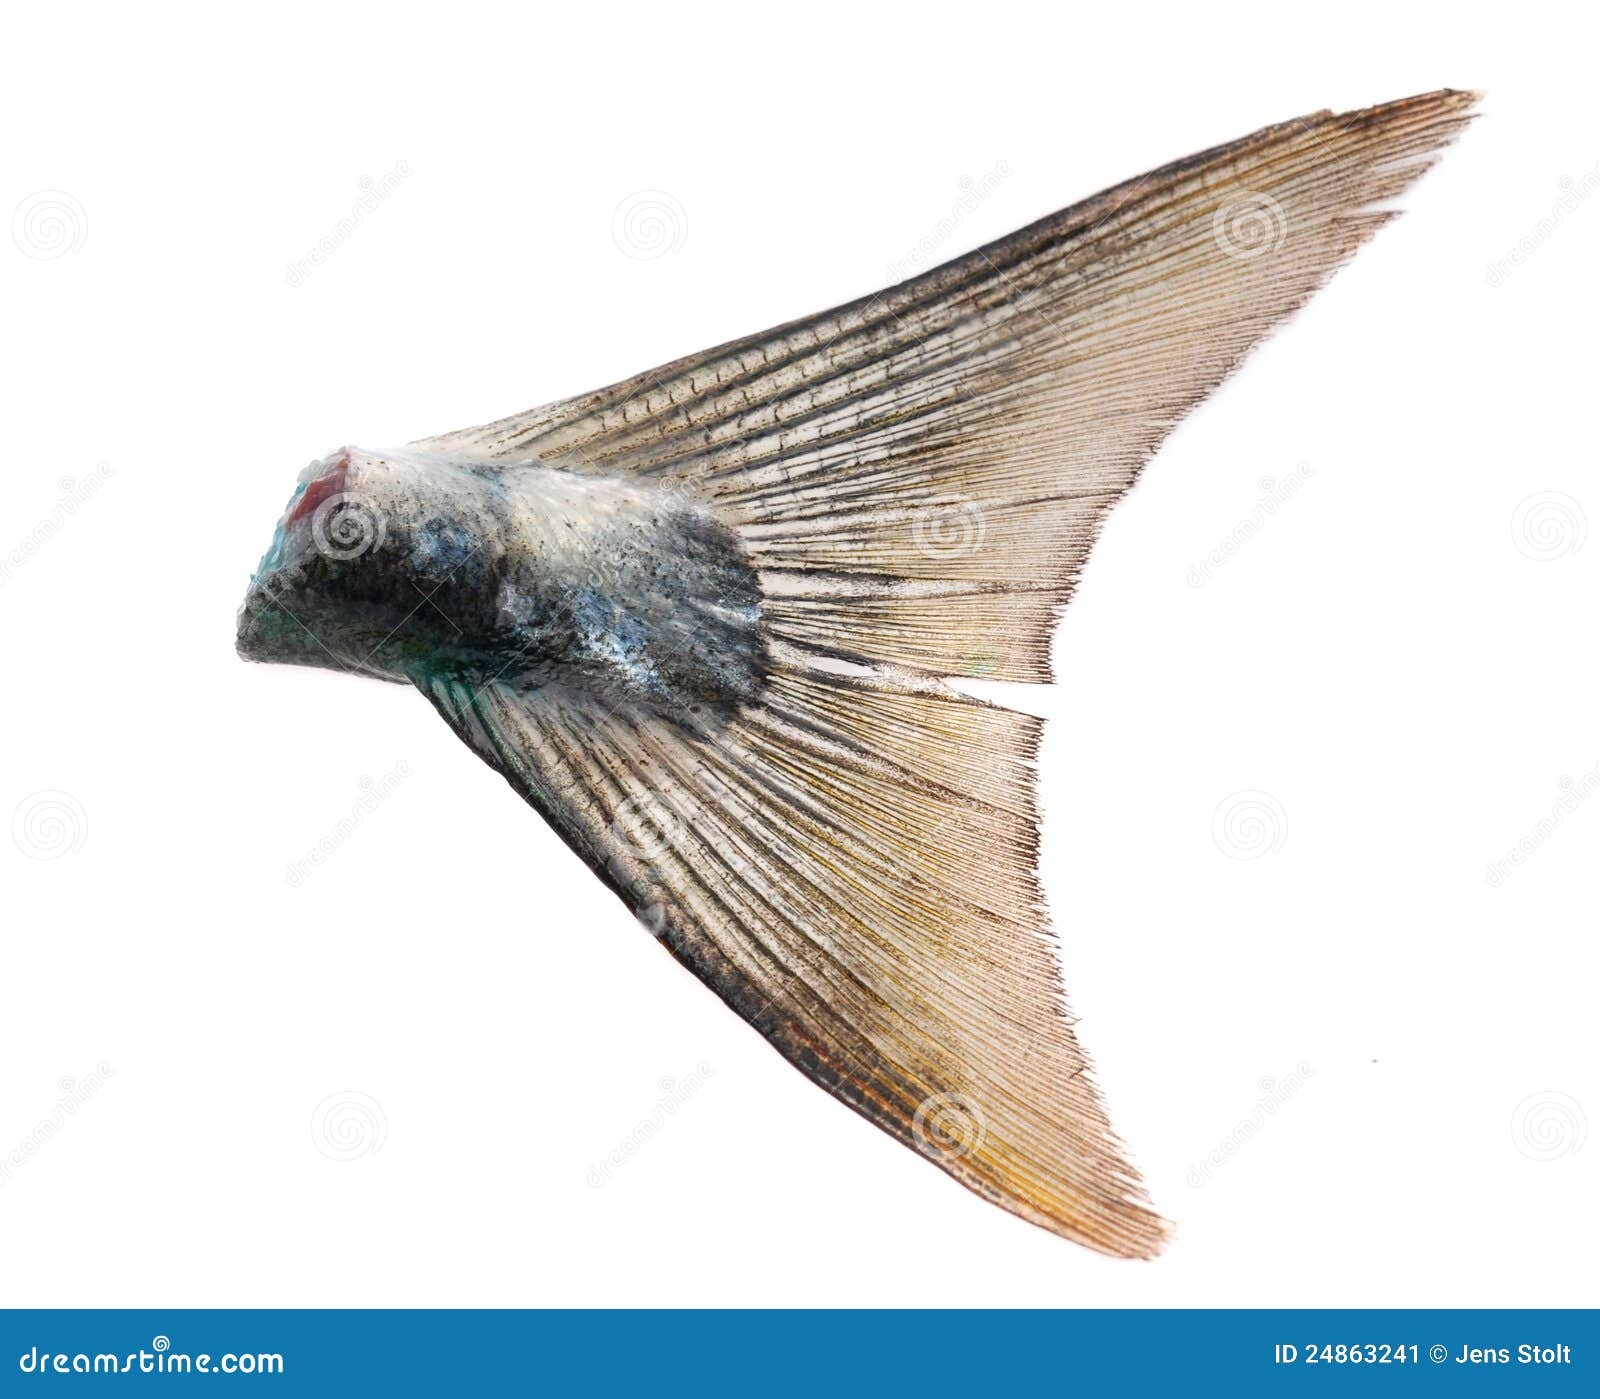 Fish tail stock image. Image of agulha, eating, mediterranean - 24863241